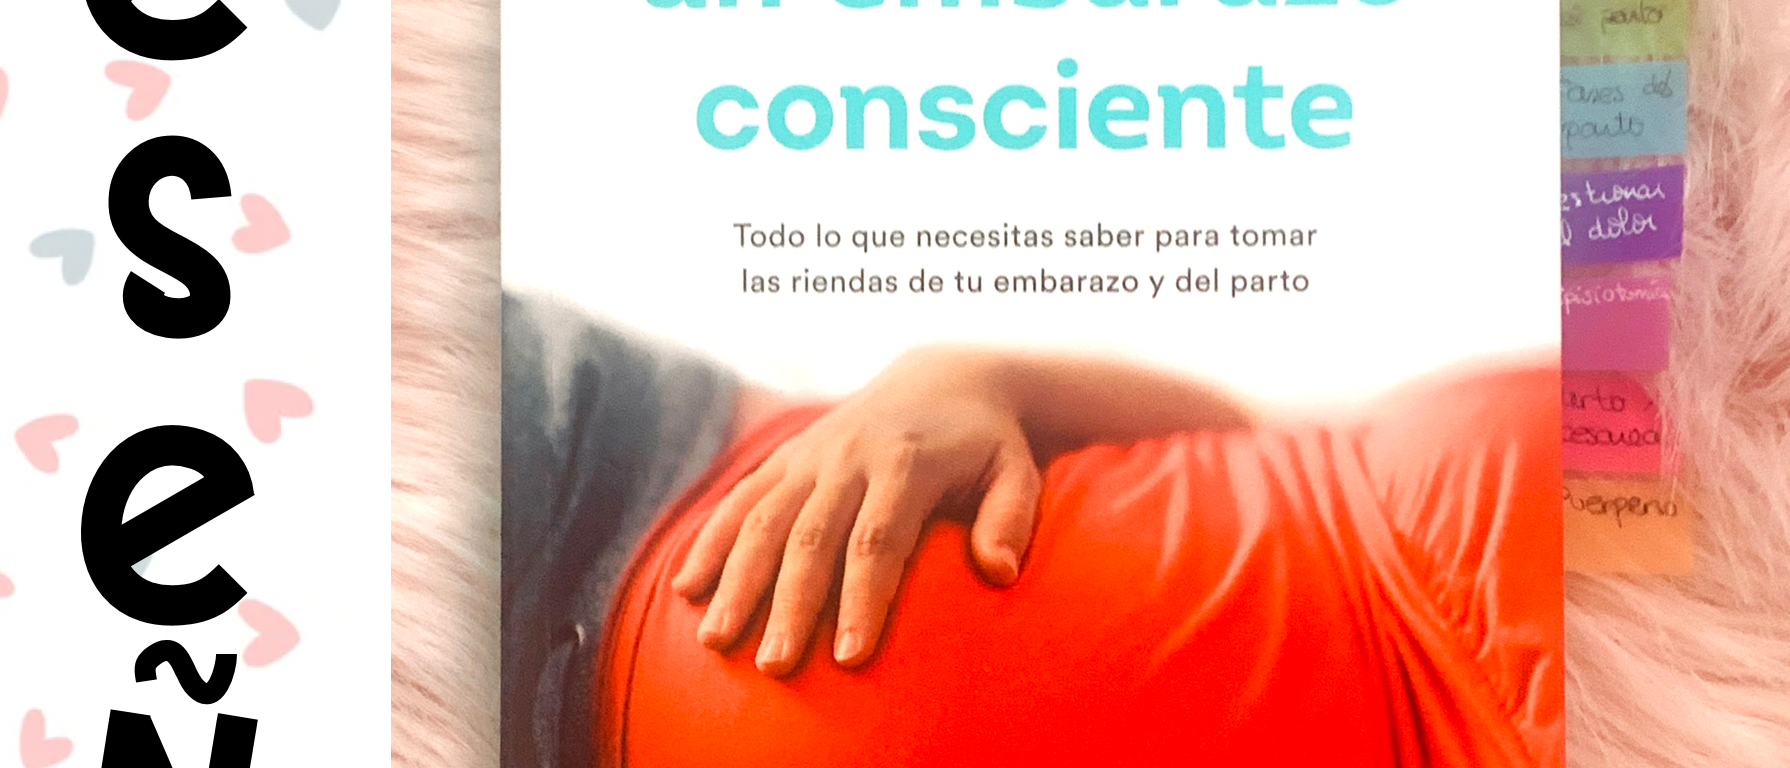 Reseña: Guía para un embarazo consciente – Entre iPads y Cuadernos